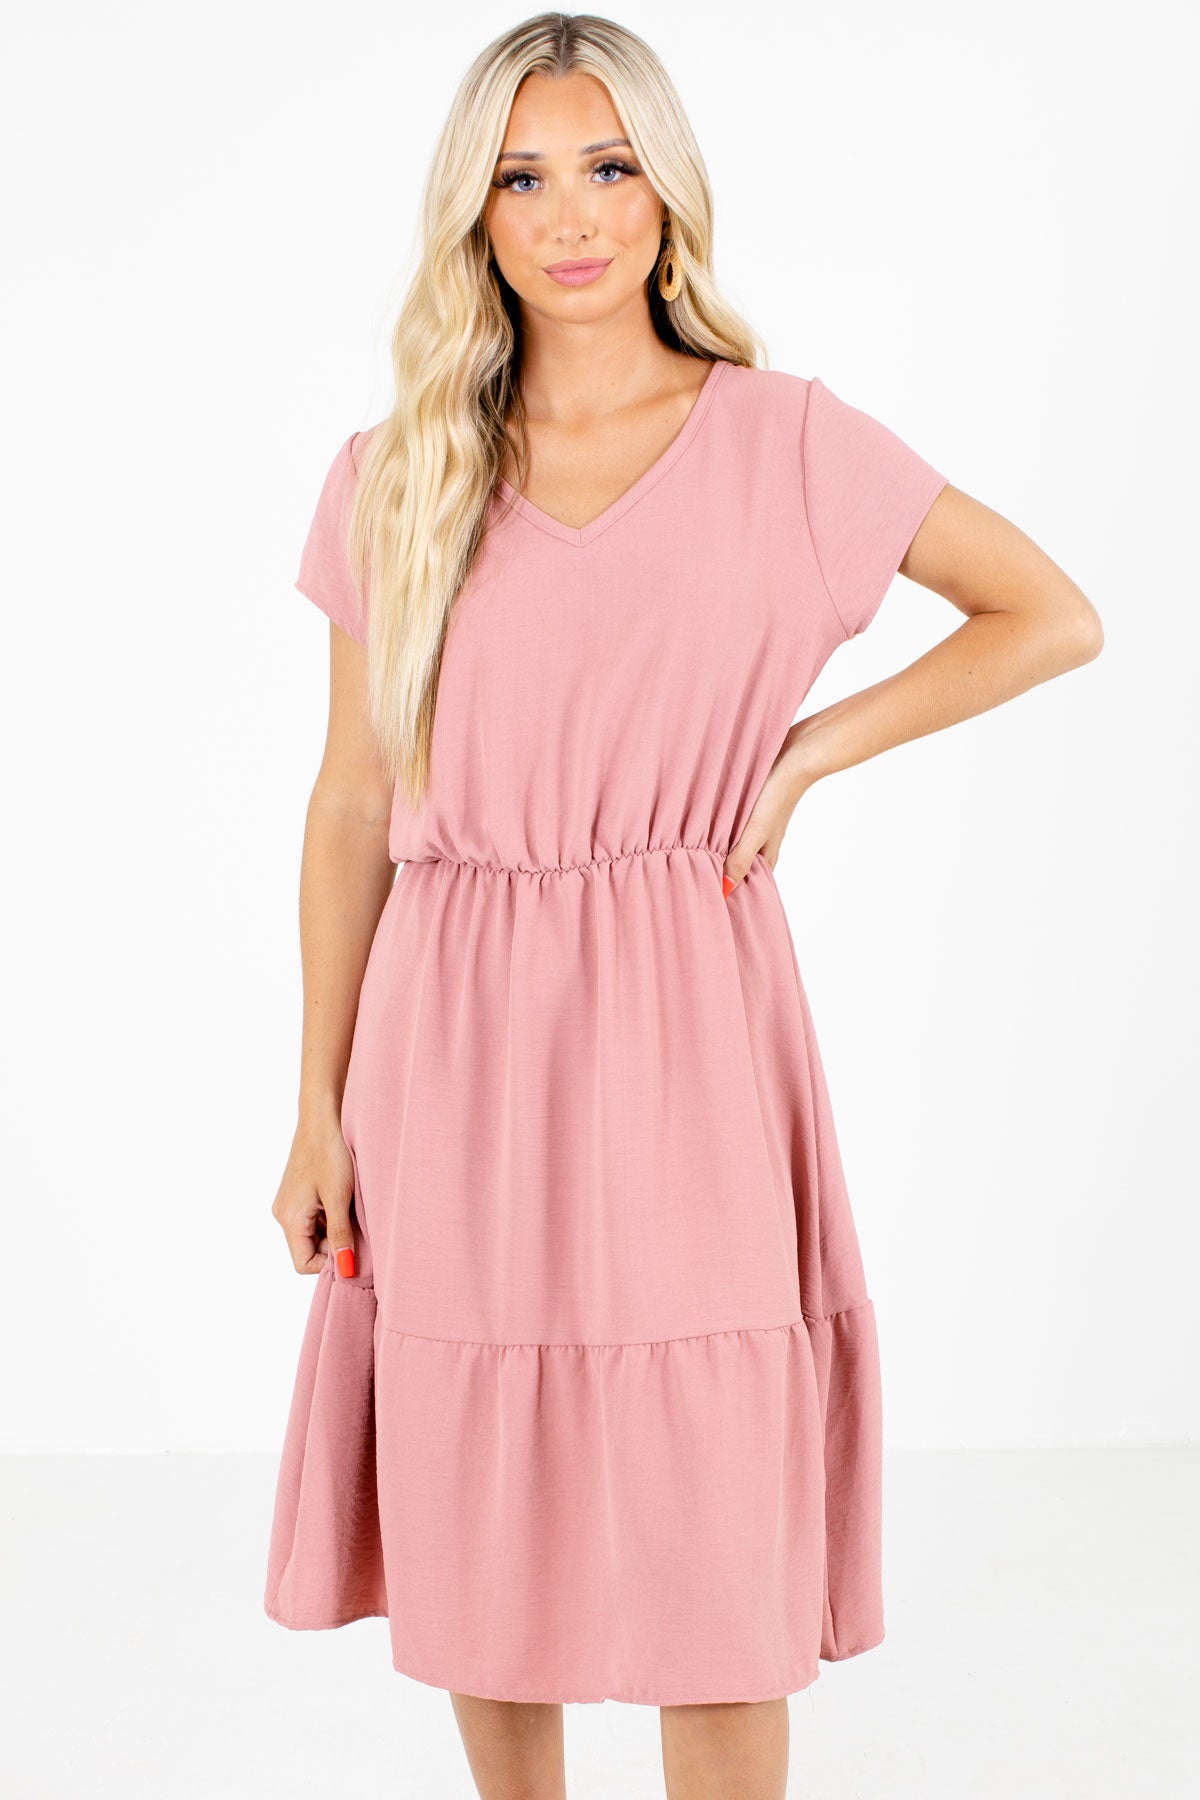 Women's Pink Lightweight Material Boutique Midi Dress